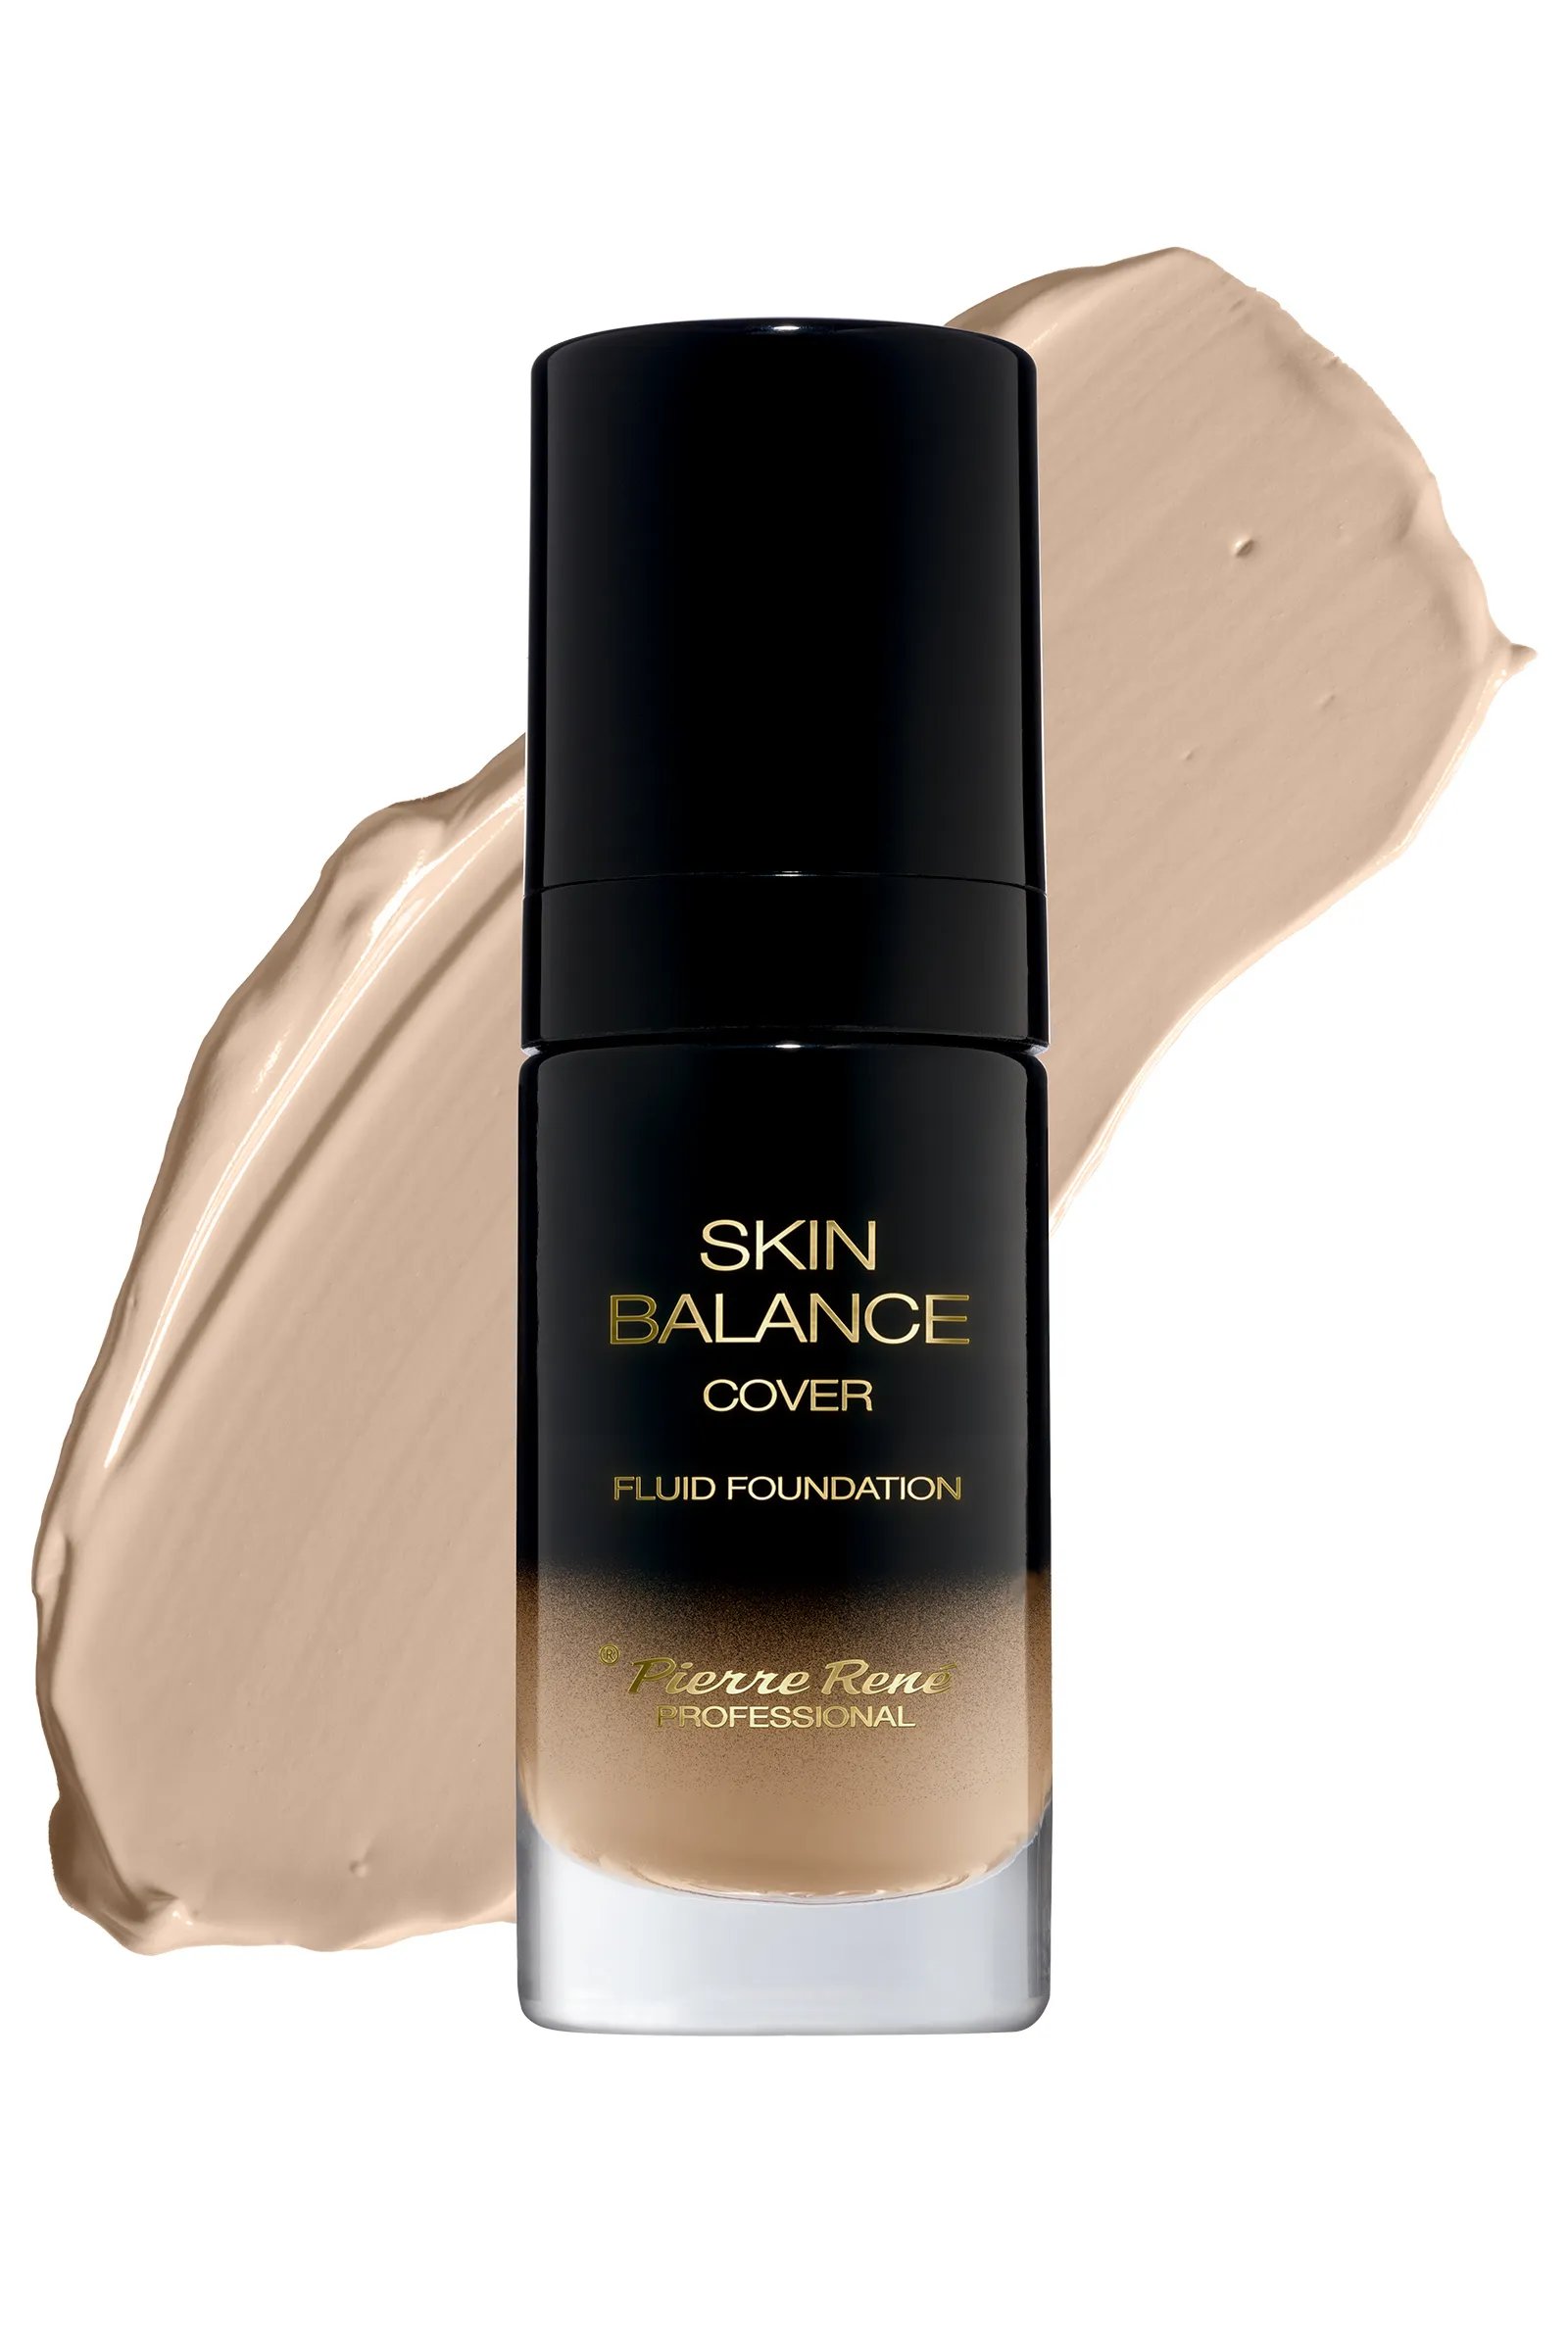 Pierre Rene Professional Skin Balance kryjący podkład wodoodporny, 22-light beige, 30 ml